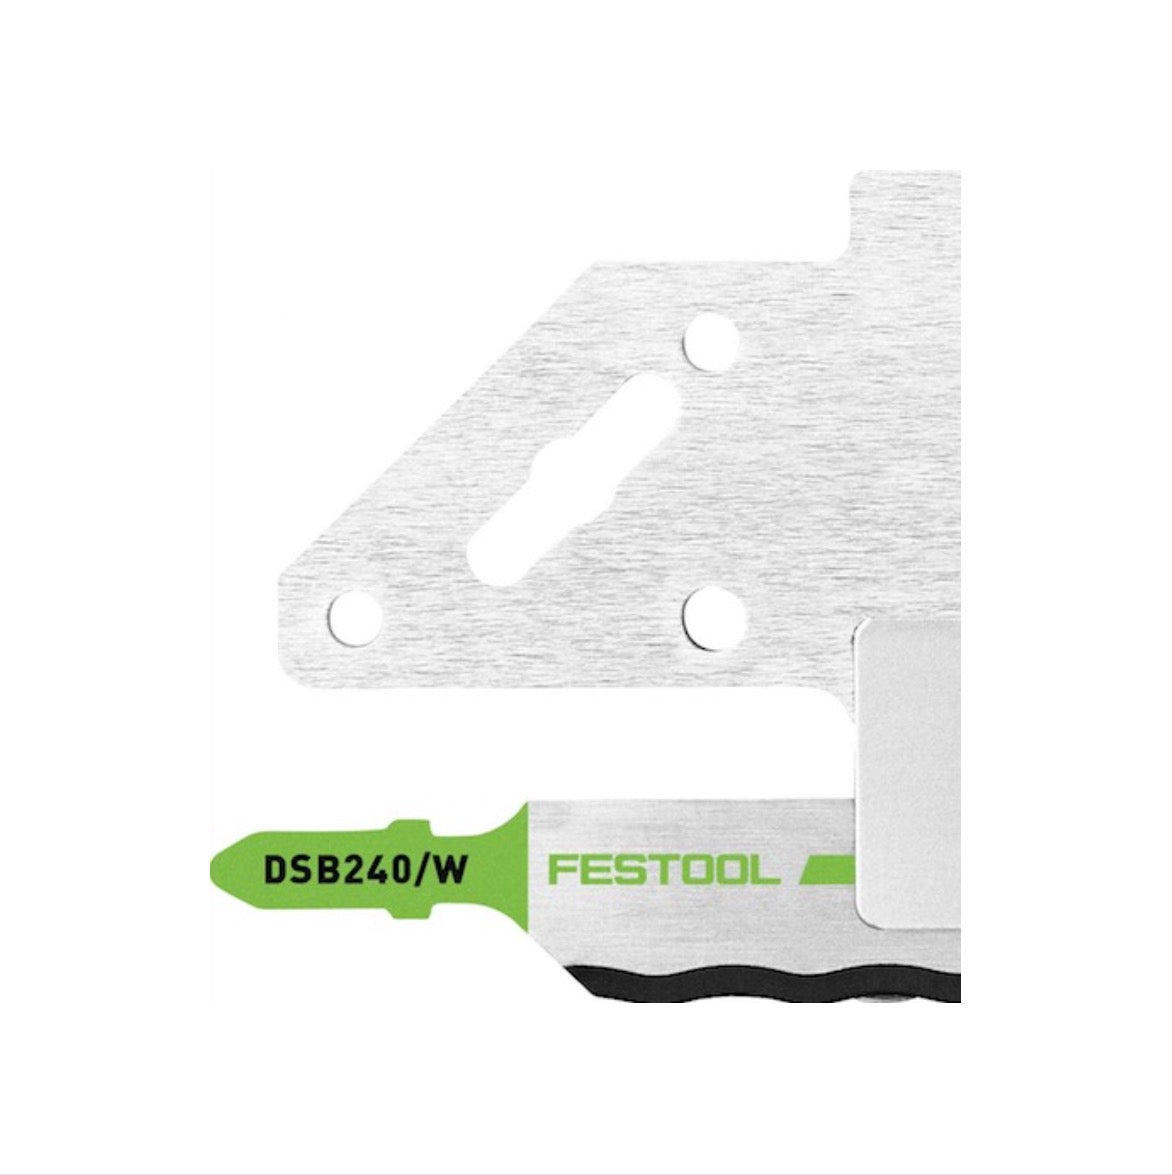 Festool Schneidgarnitur SG-240/W-ISC + 1 x Sägeblatt DSB 240/W Wellenschliff für Dämmstoffschnitte für ISC 240 EB